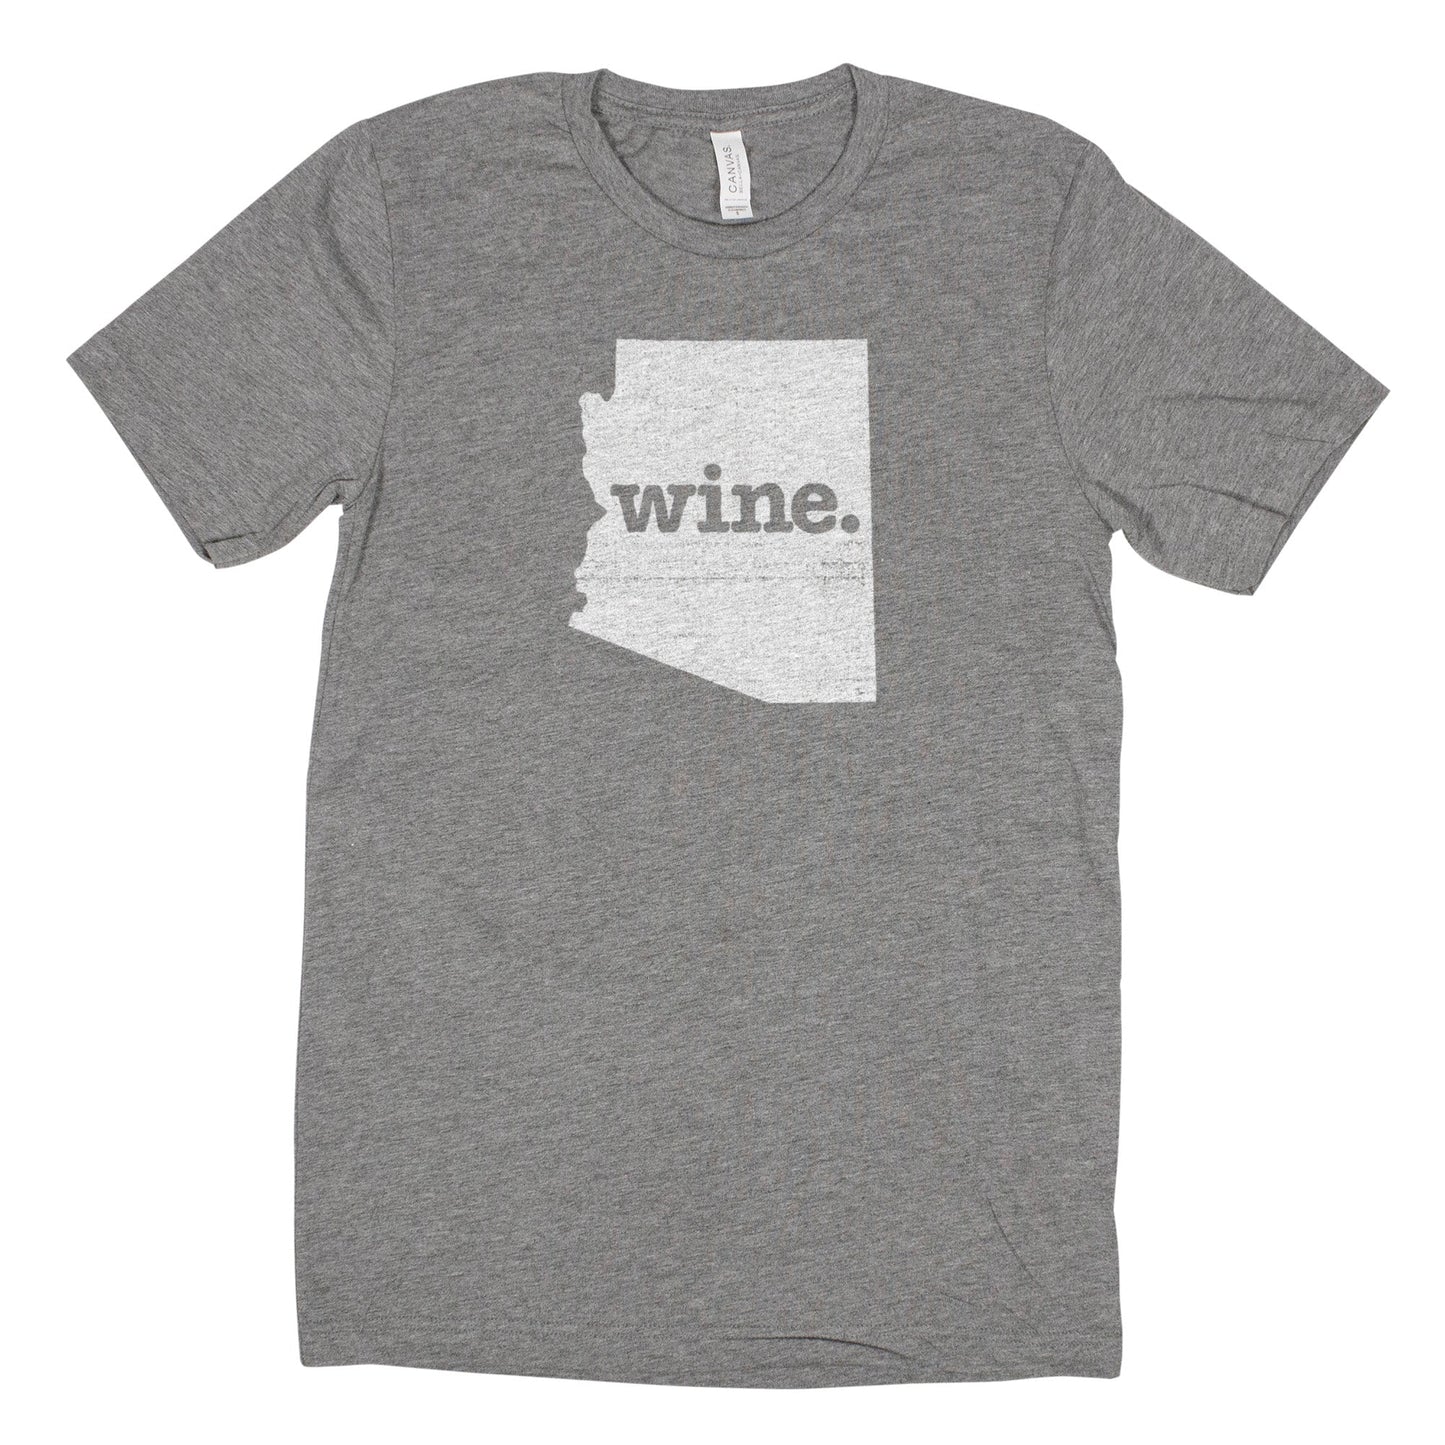 wine. Men's Unisex T-Shirt - Arizona